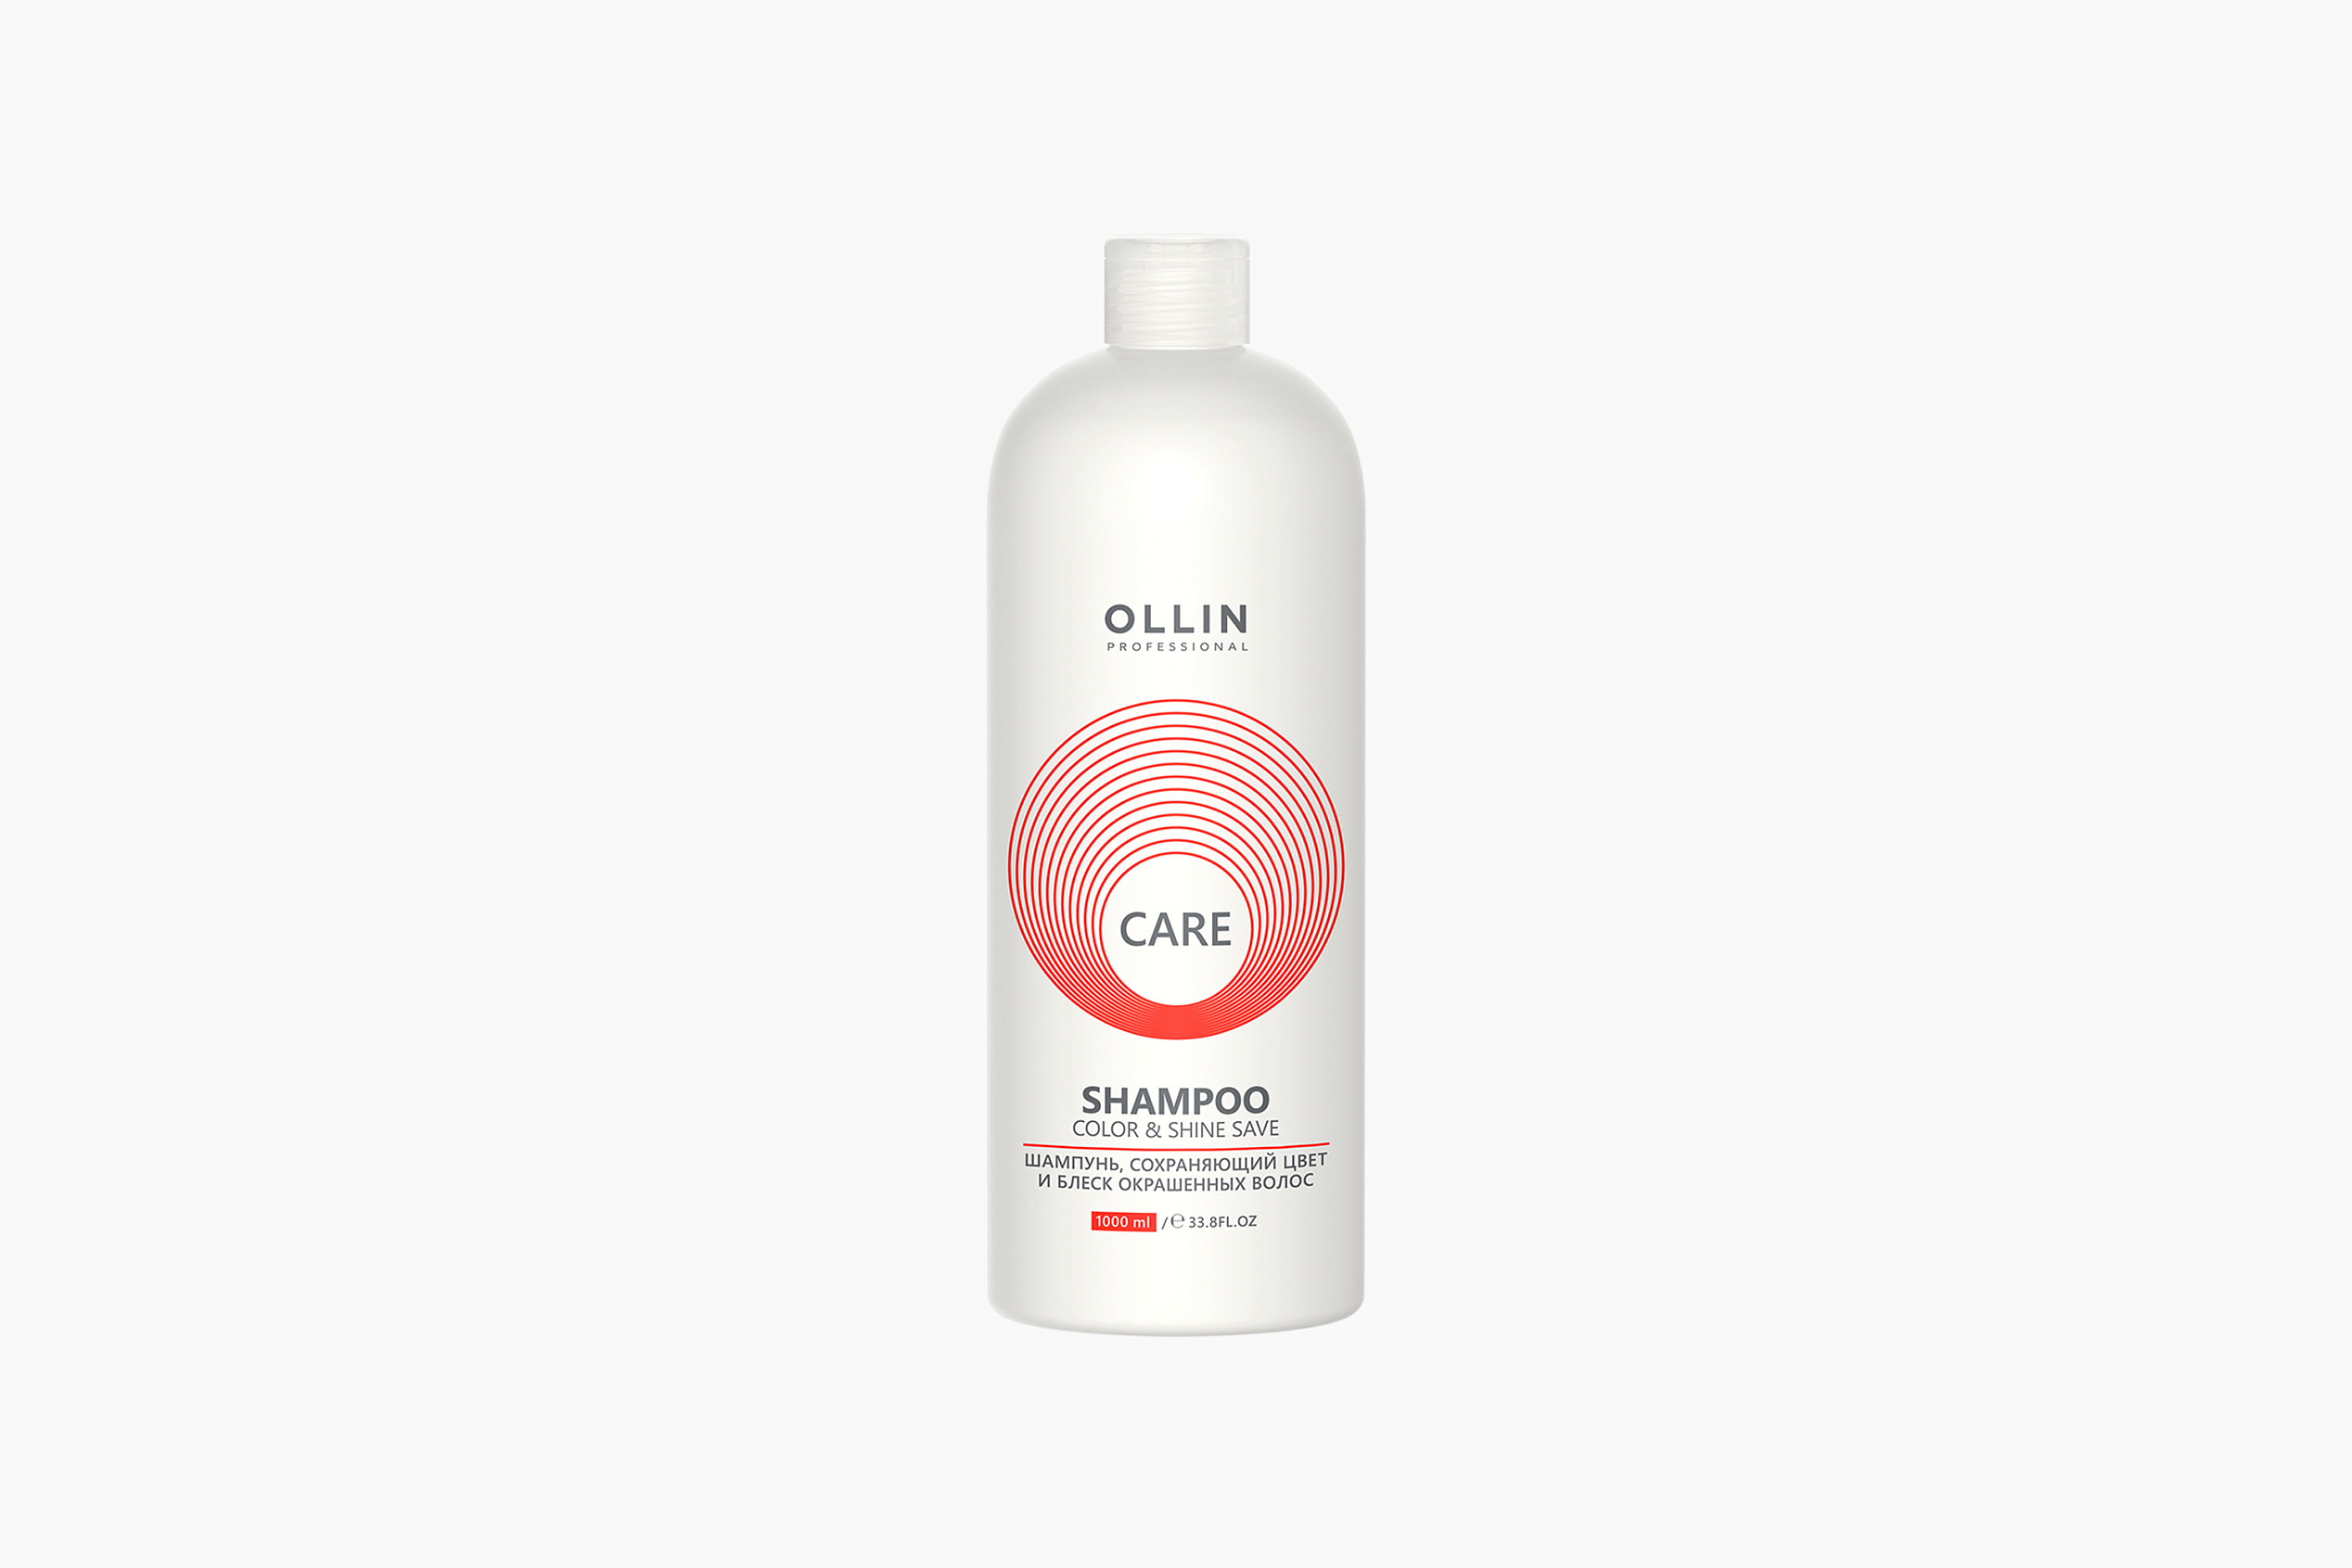 Ollin Professional Care Color&Shine Save Shampoo фото 1